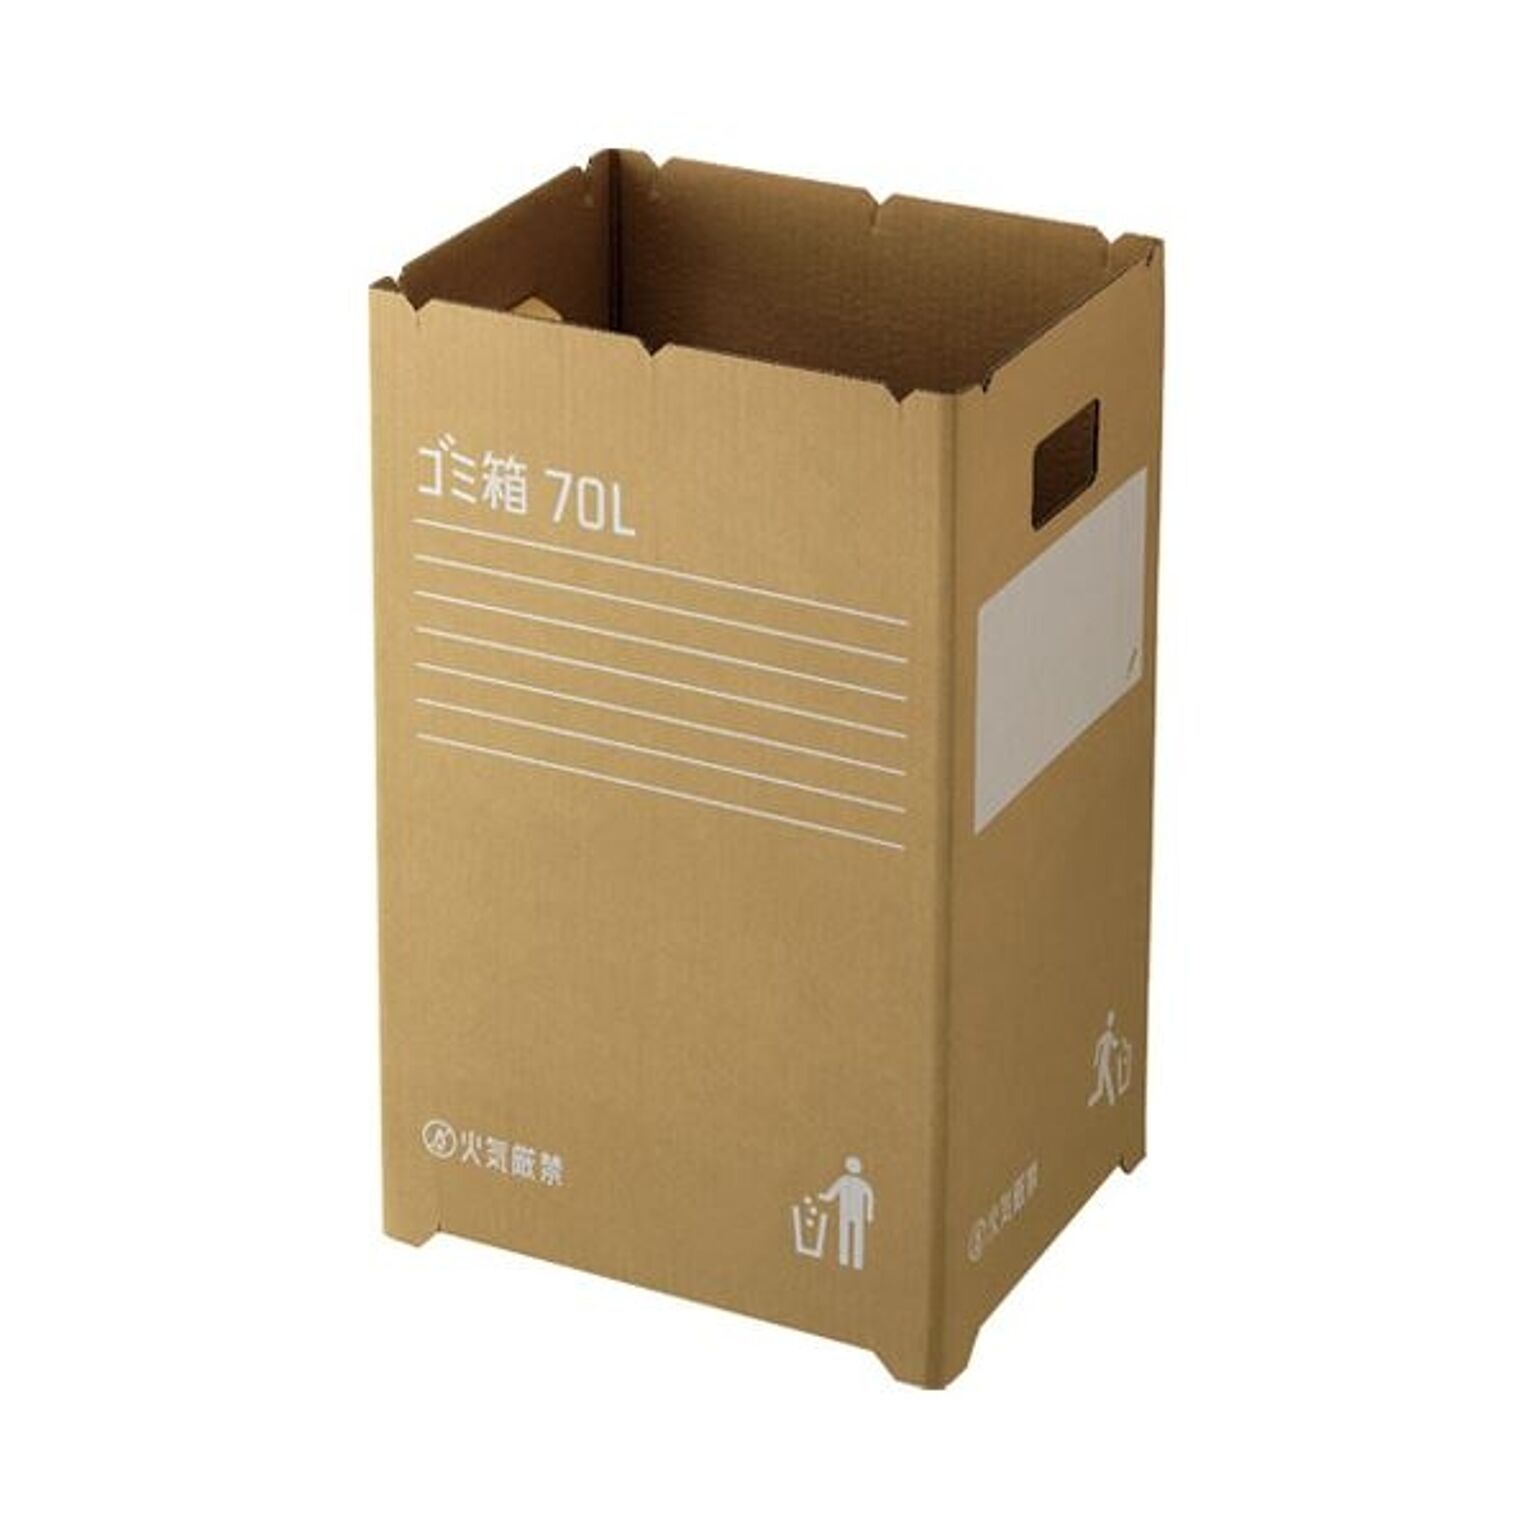 (まとめ)ダンボール製 ゴミ箱/ダストボックス 70L 2枚入り 簡易ゴミ箱 GGYC726 ×5セット